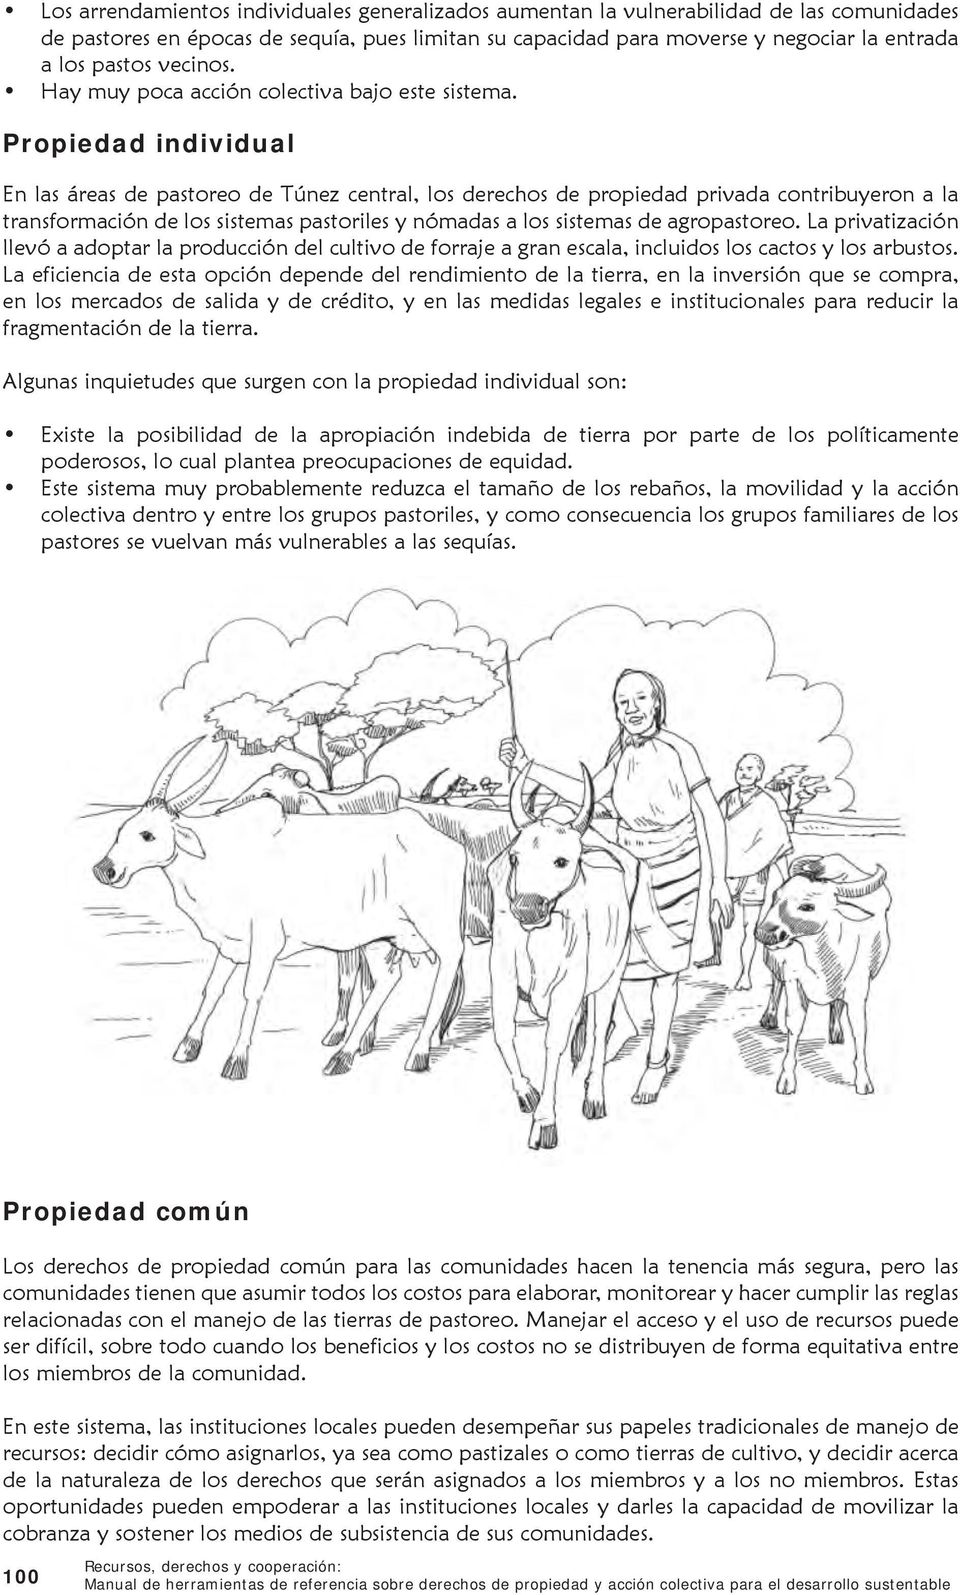 Propiedad individual En las áreas de pastoreo de Túnez central, los derechos de propiedad privada contribuyeron a la transformación de los sistemas pastoriles y nómadas a los sistemas de agropastoreo.